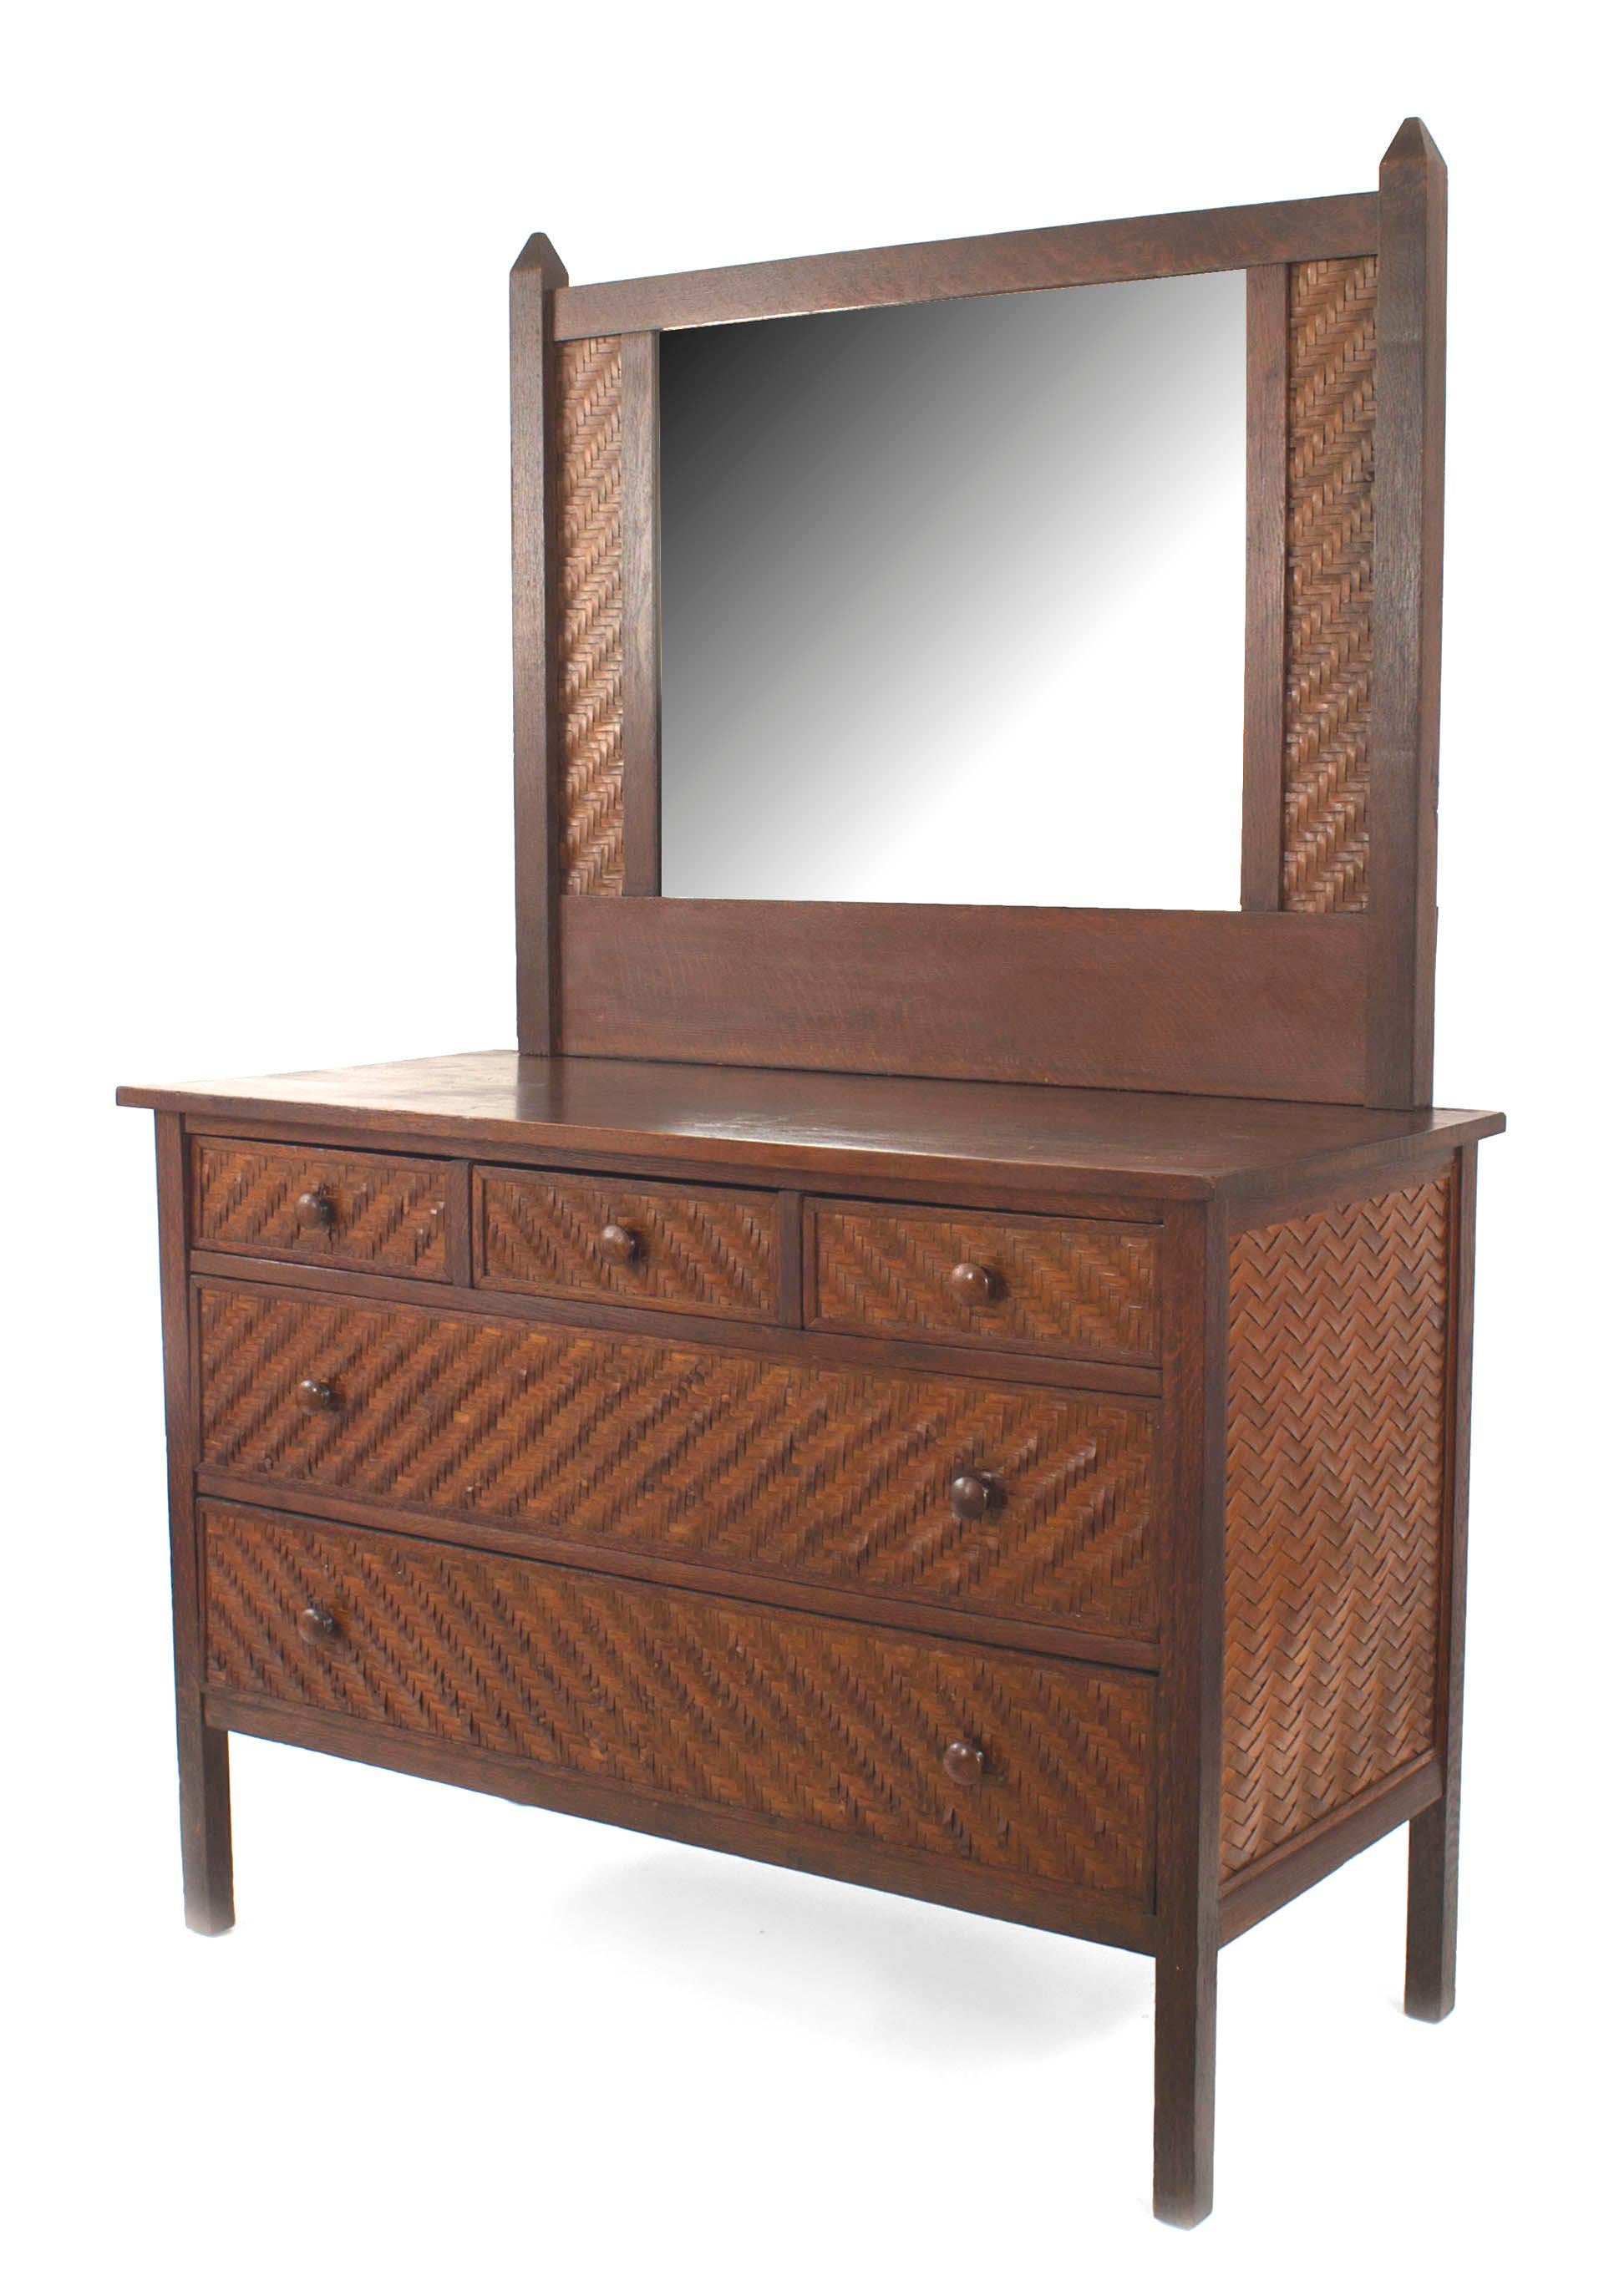 Commode rustique américaine en chêne teinté foncé avec miroir, 3 tiroirs et 2 grands tiroirs, côtés et garnitures en bois splint (Indian Splint Manufacturing Co) (Related items : 061006, 061007, 061007A)
